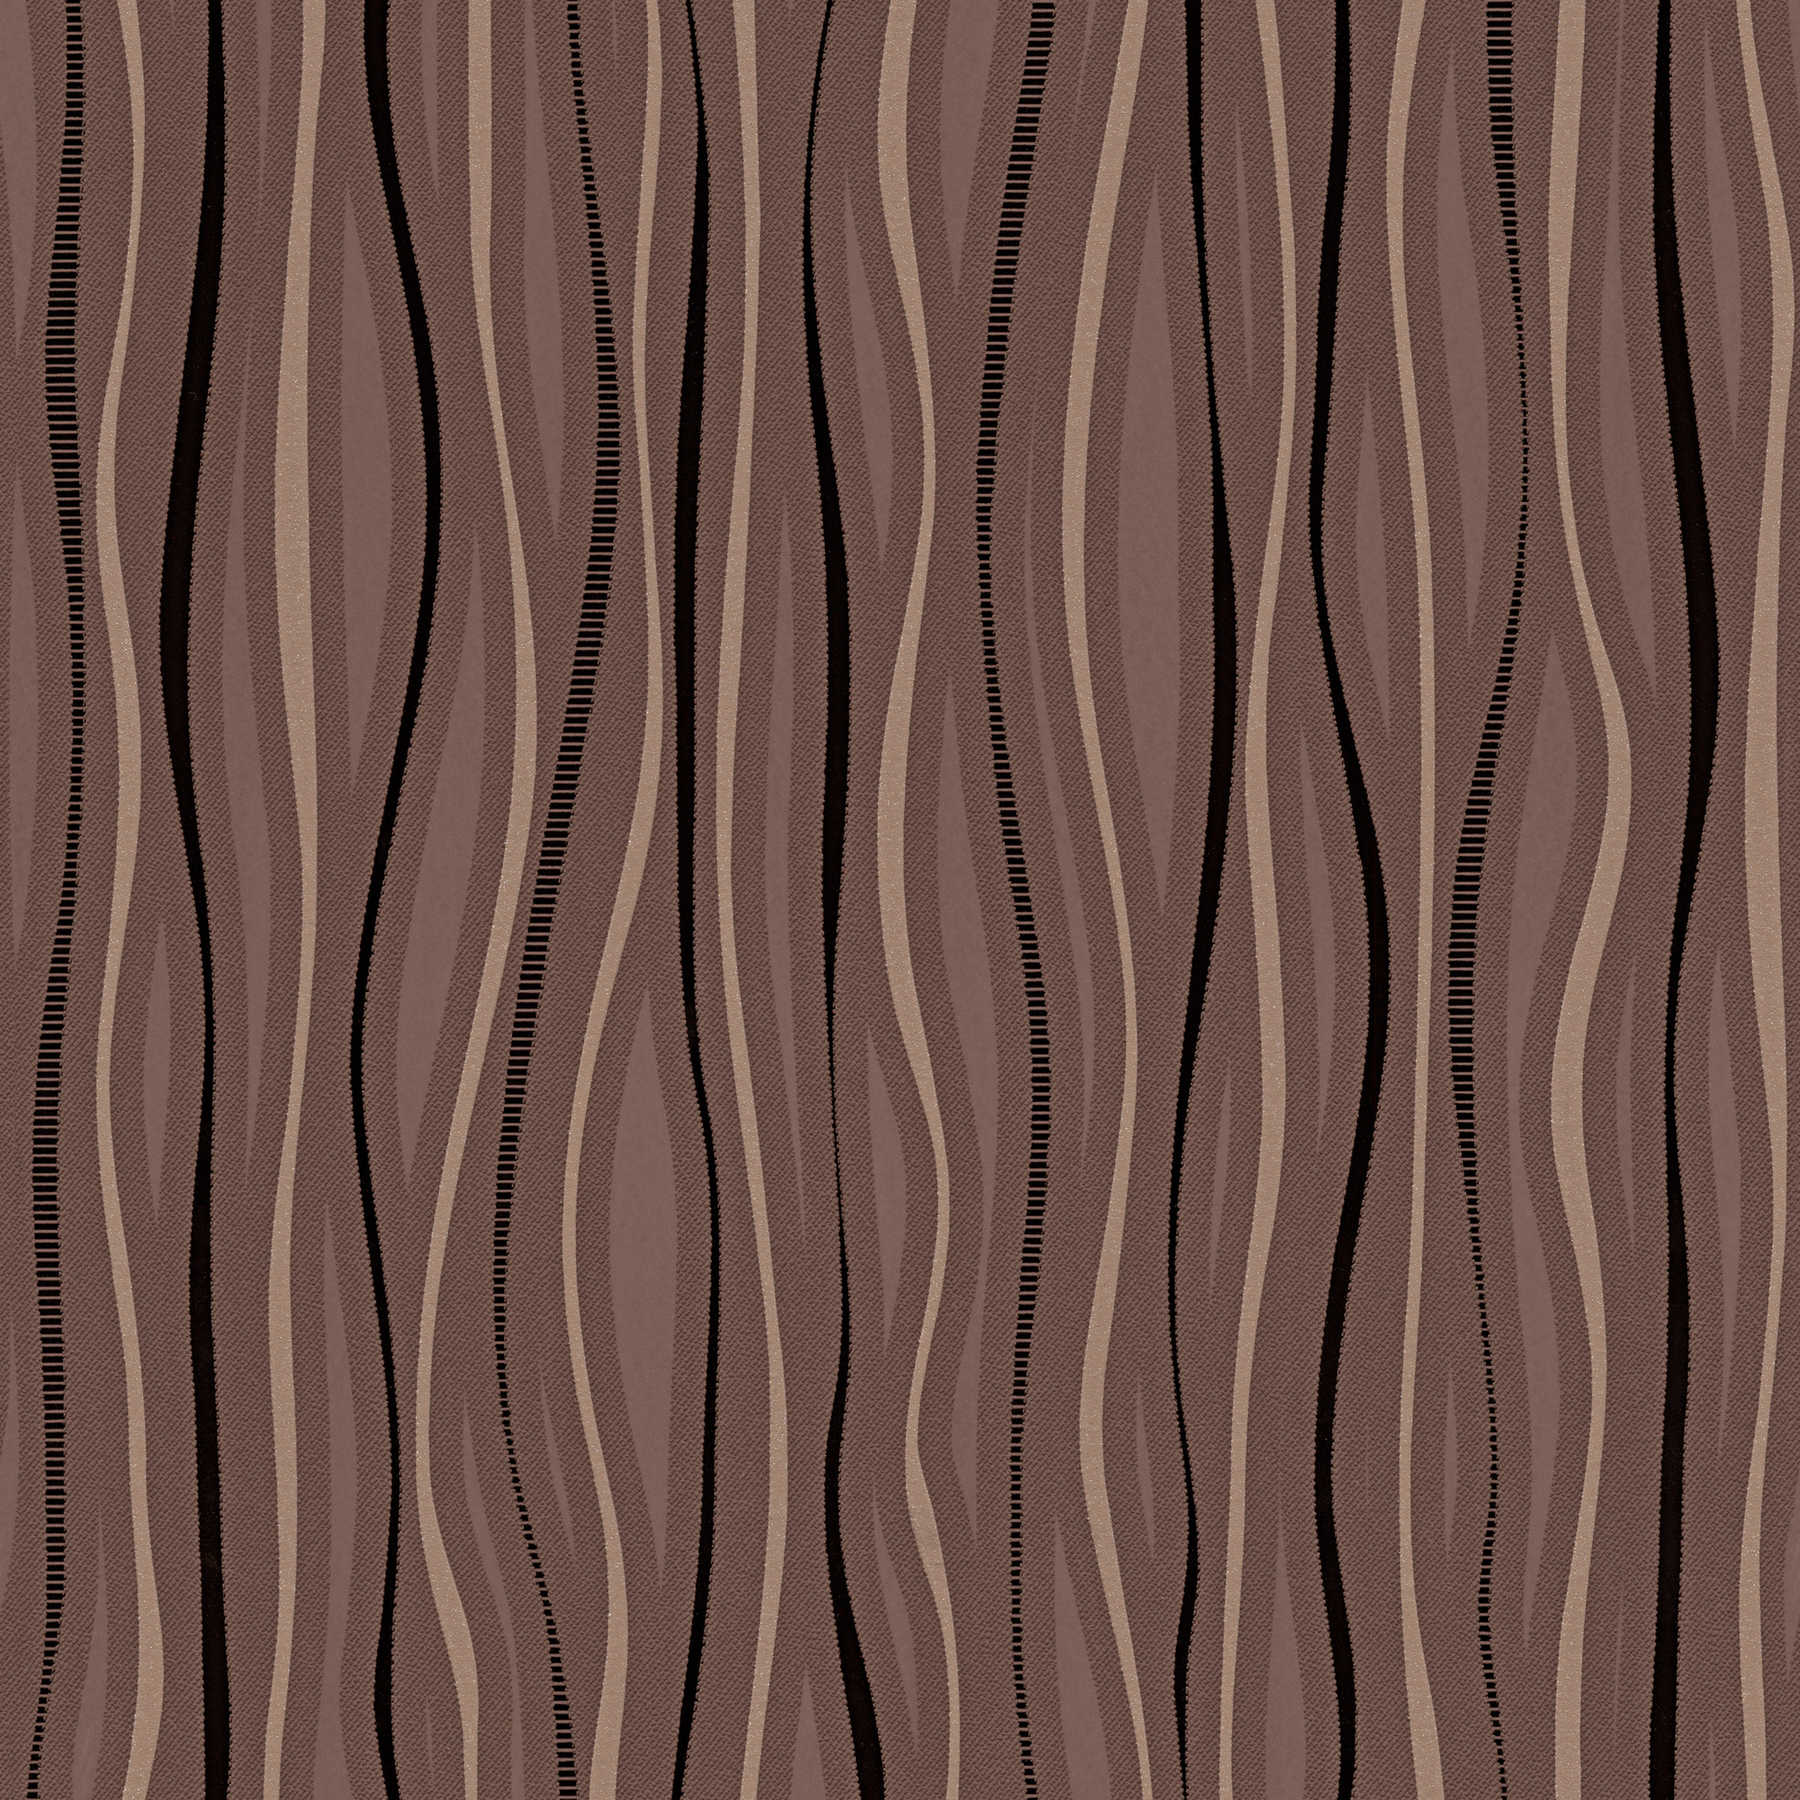         Linierte Mustertapete mit Metallic Effekt – Braun
    